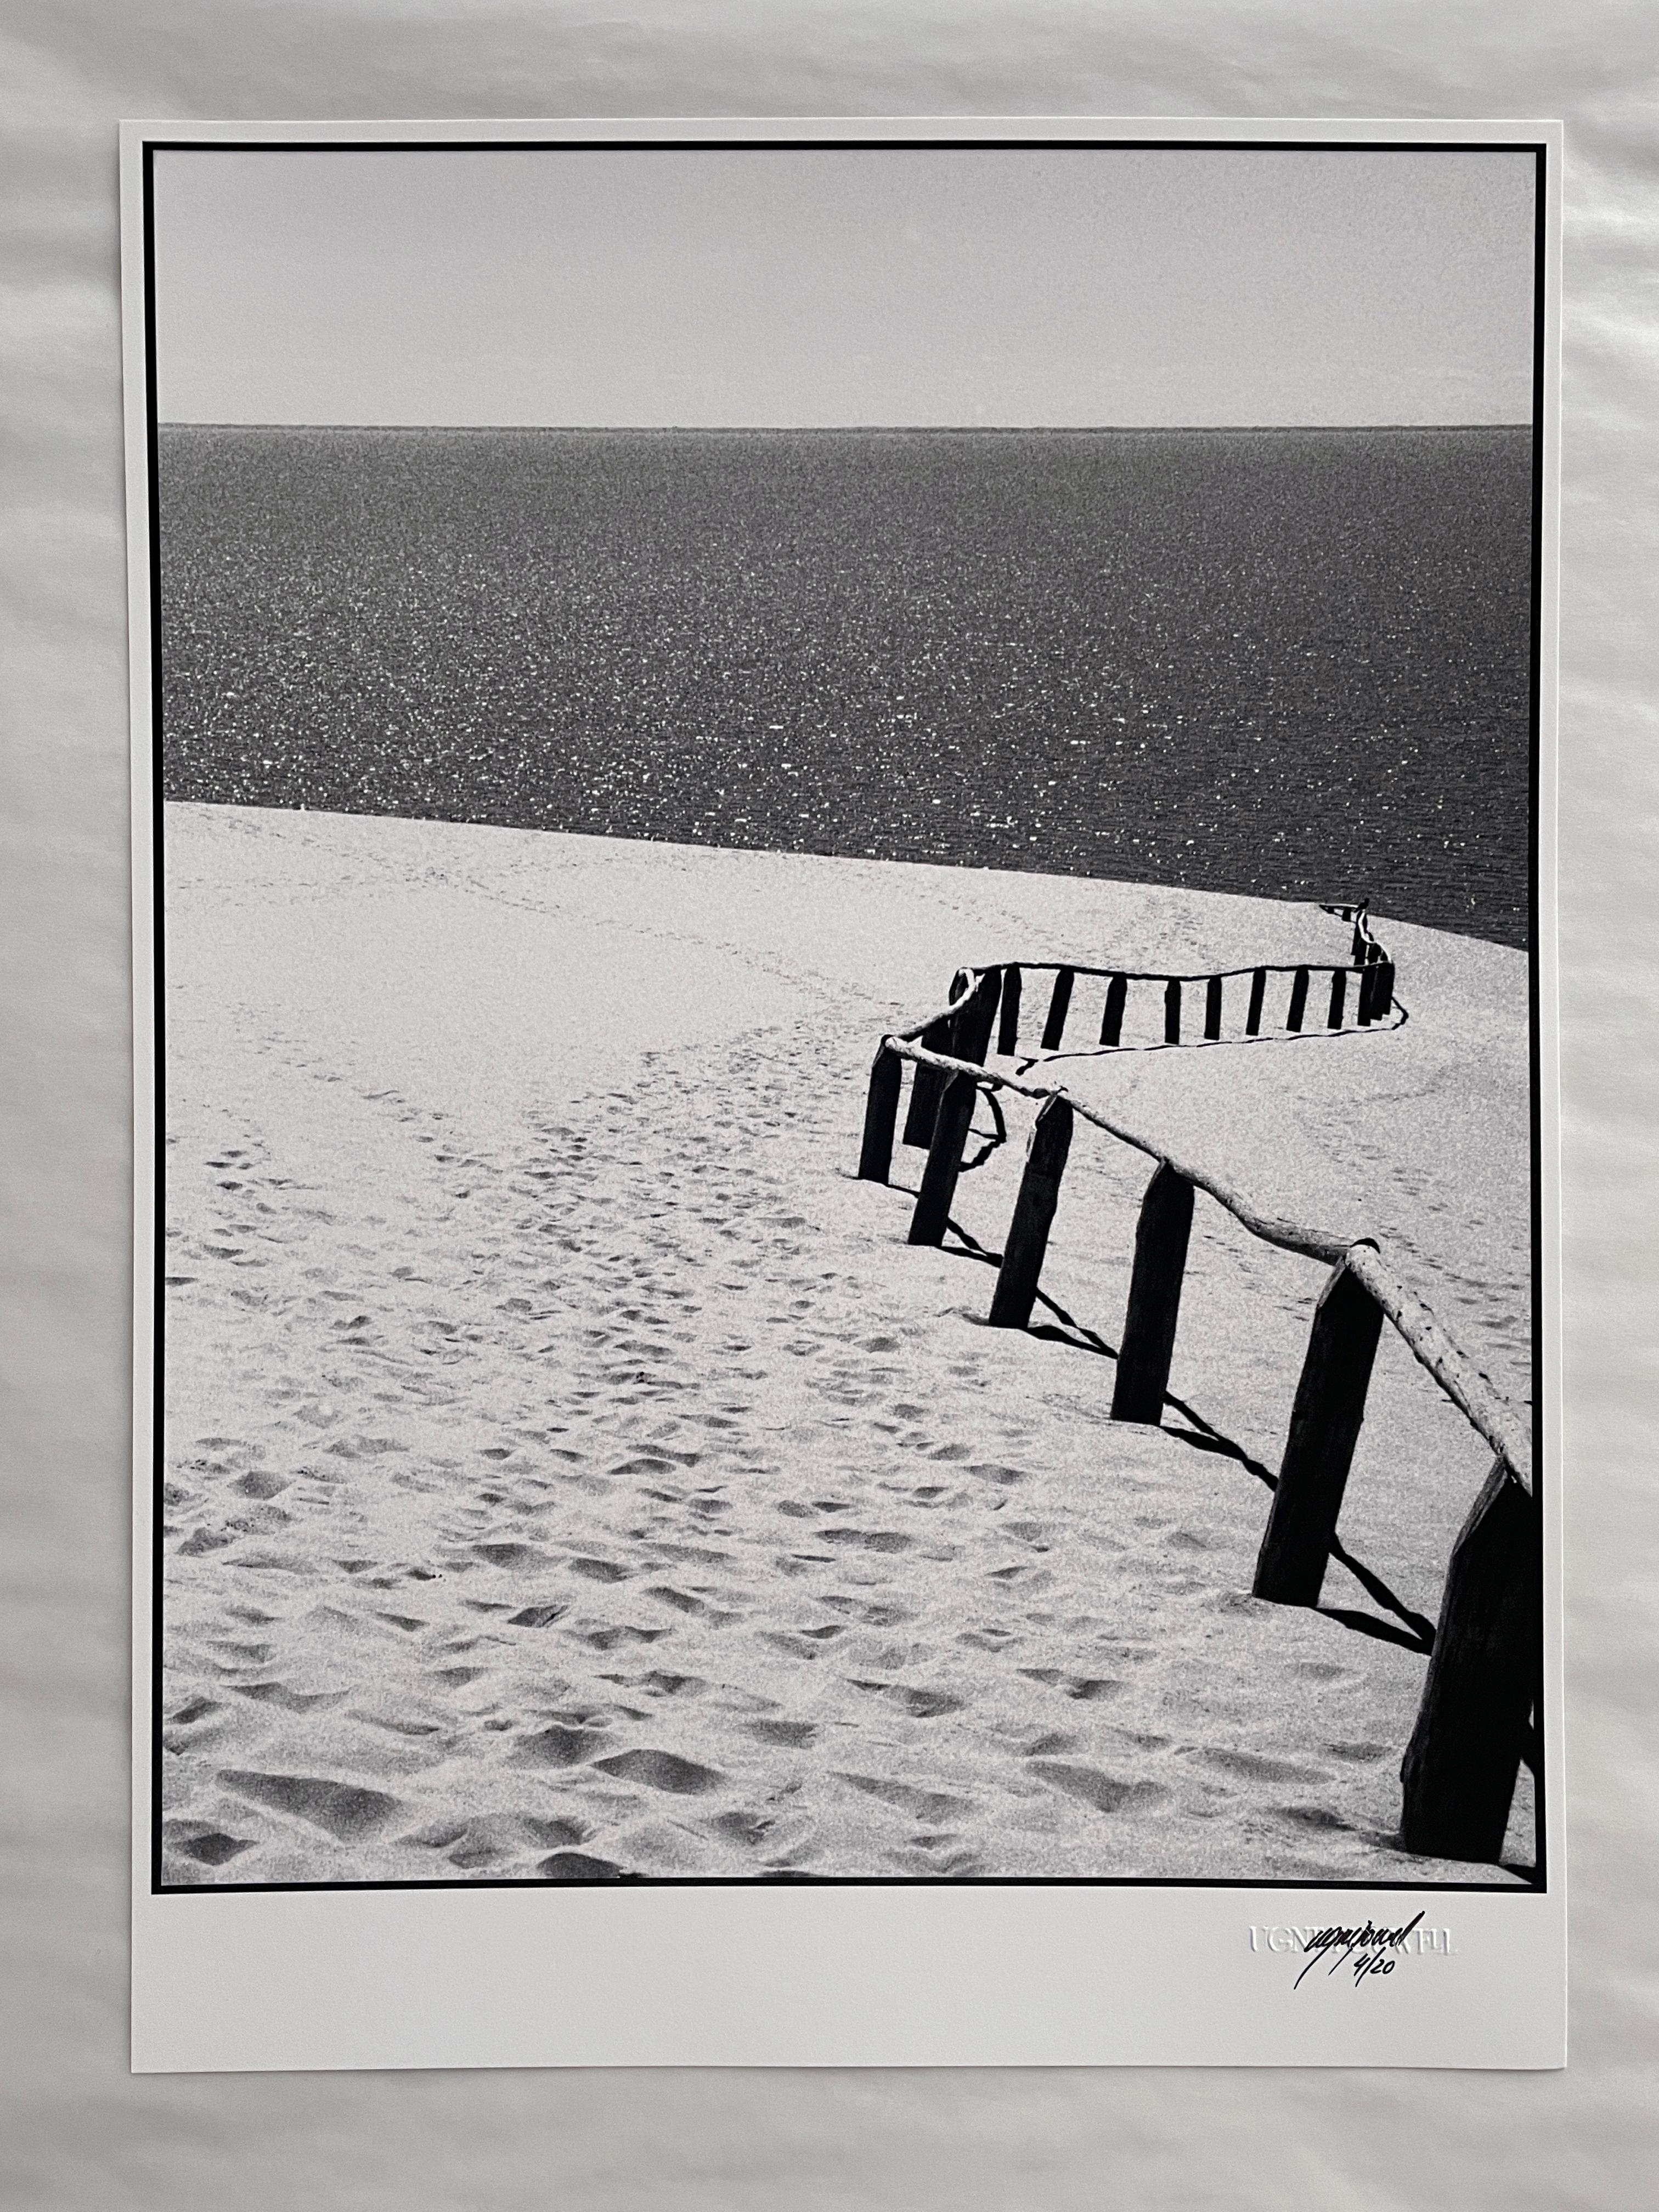 Nida

Est une photographie 35 mm en noir et blanc de dunes de sable de la côte baltique à Nida, en Lituanie, prise au cours de l'été 2016.

Tiré à 20 exemplaires.

Imprimé sur du papier fin Hahnemühle Photo Rag.

La photographie est signée au recto